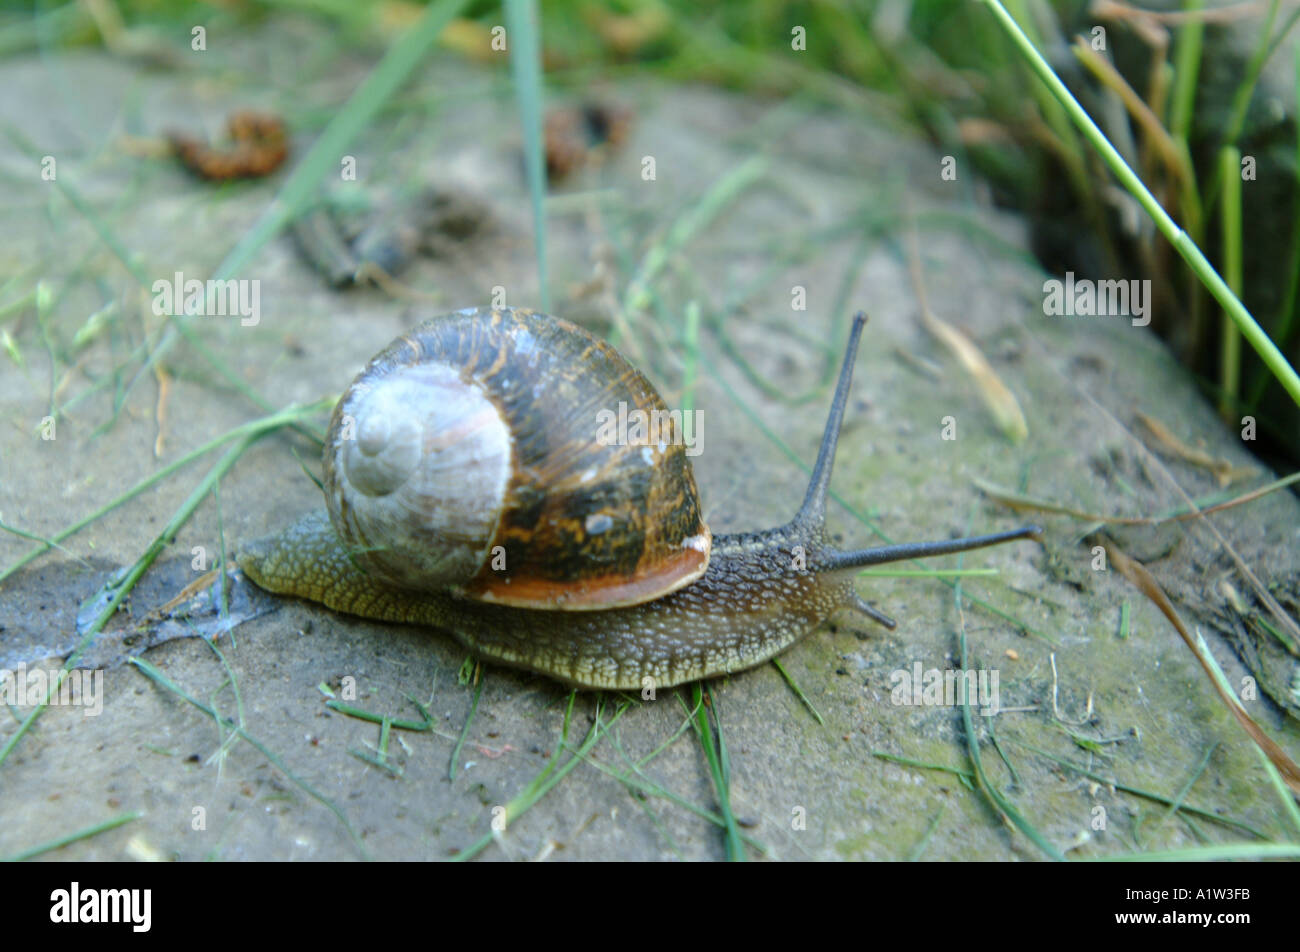 A garden snail crawling across a stone Stock Photo